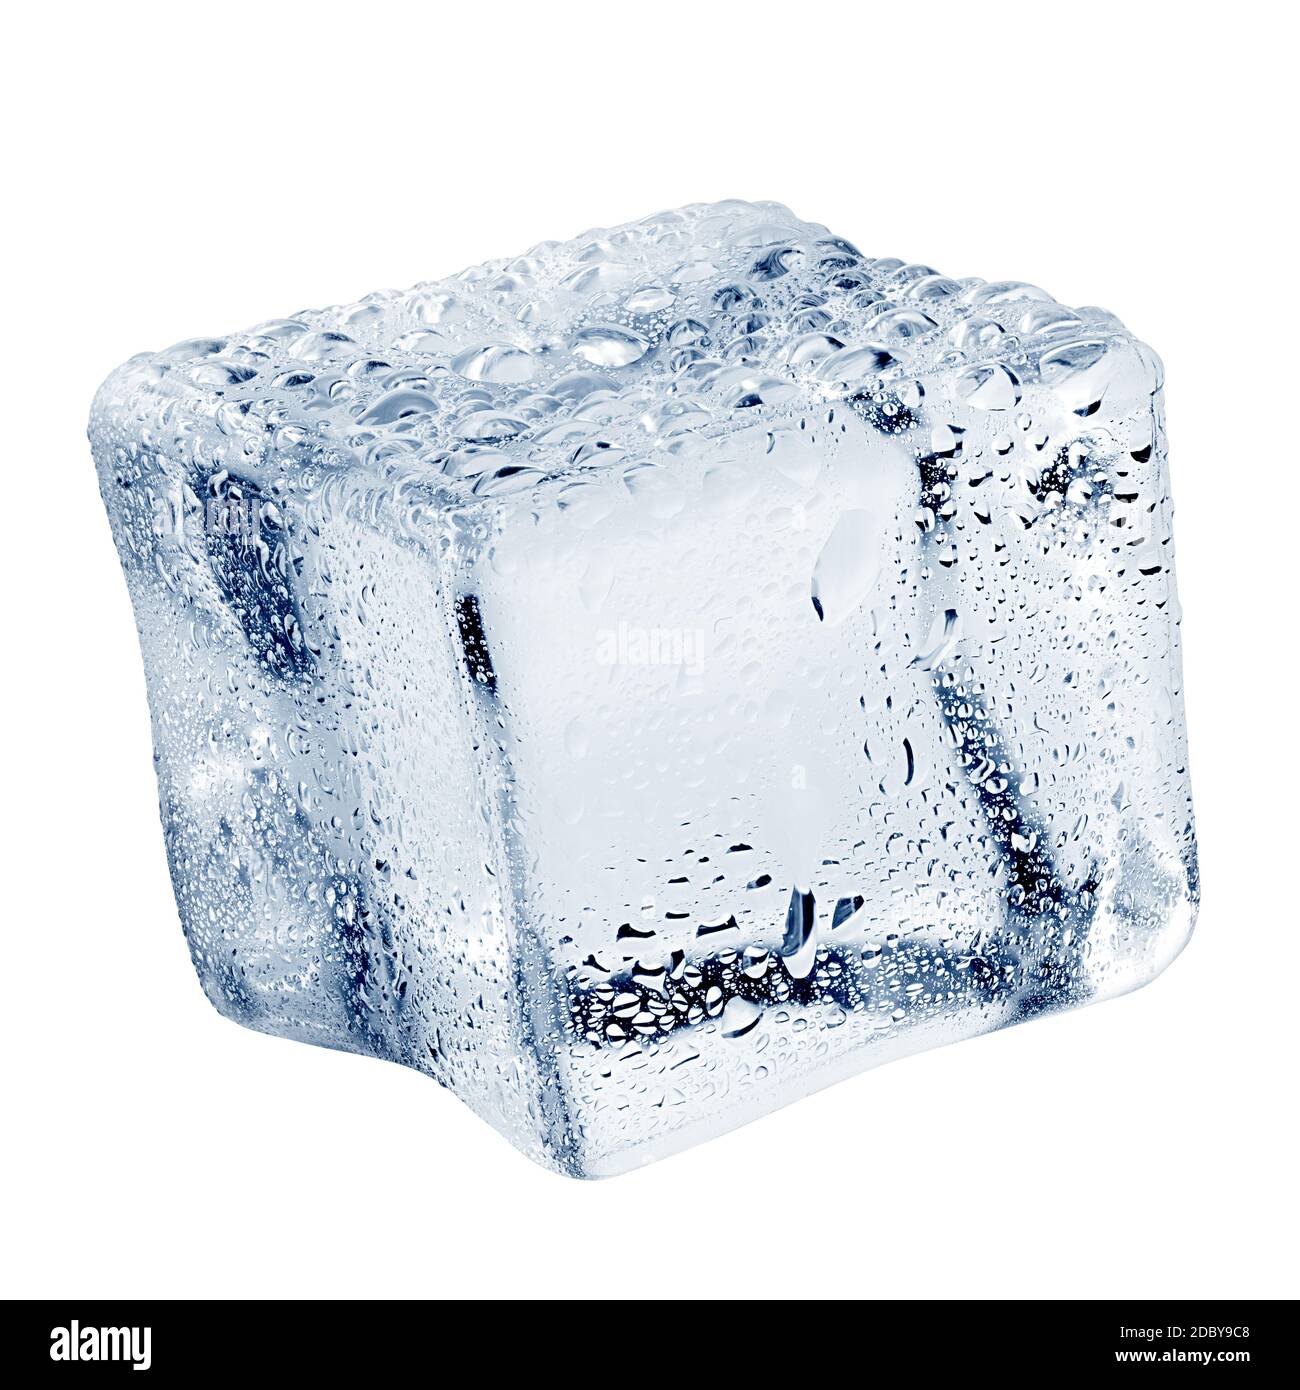 Cubo de hielo - Wikipedia, la enciclopedia libre